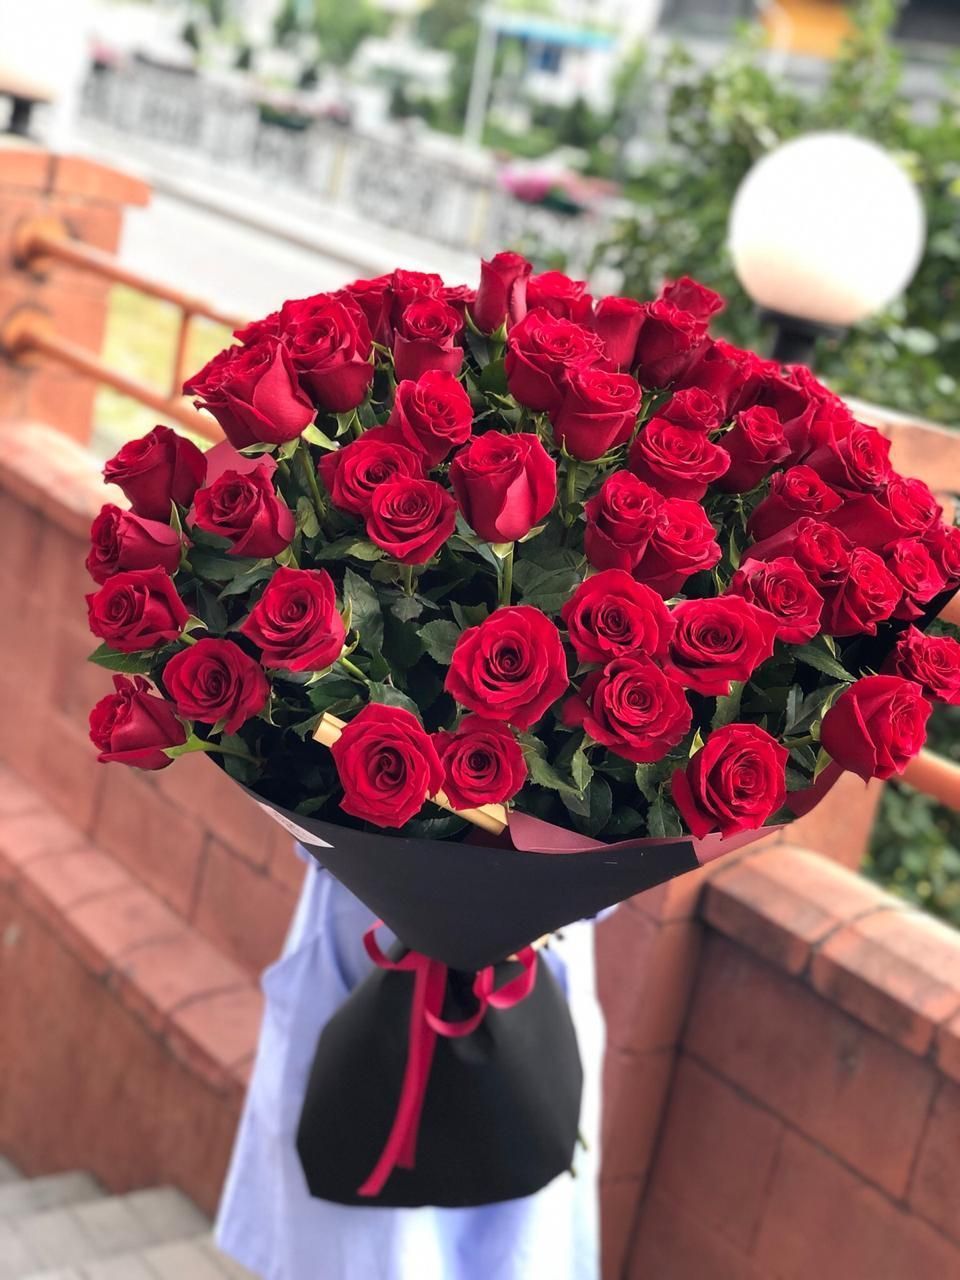 Букет из 51 красной голландской розы